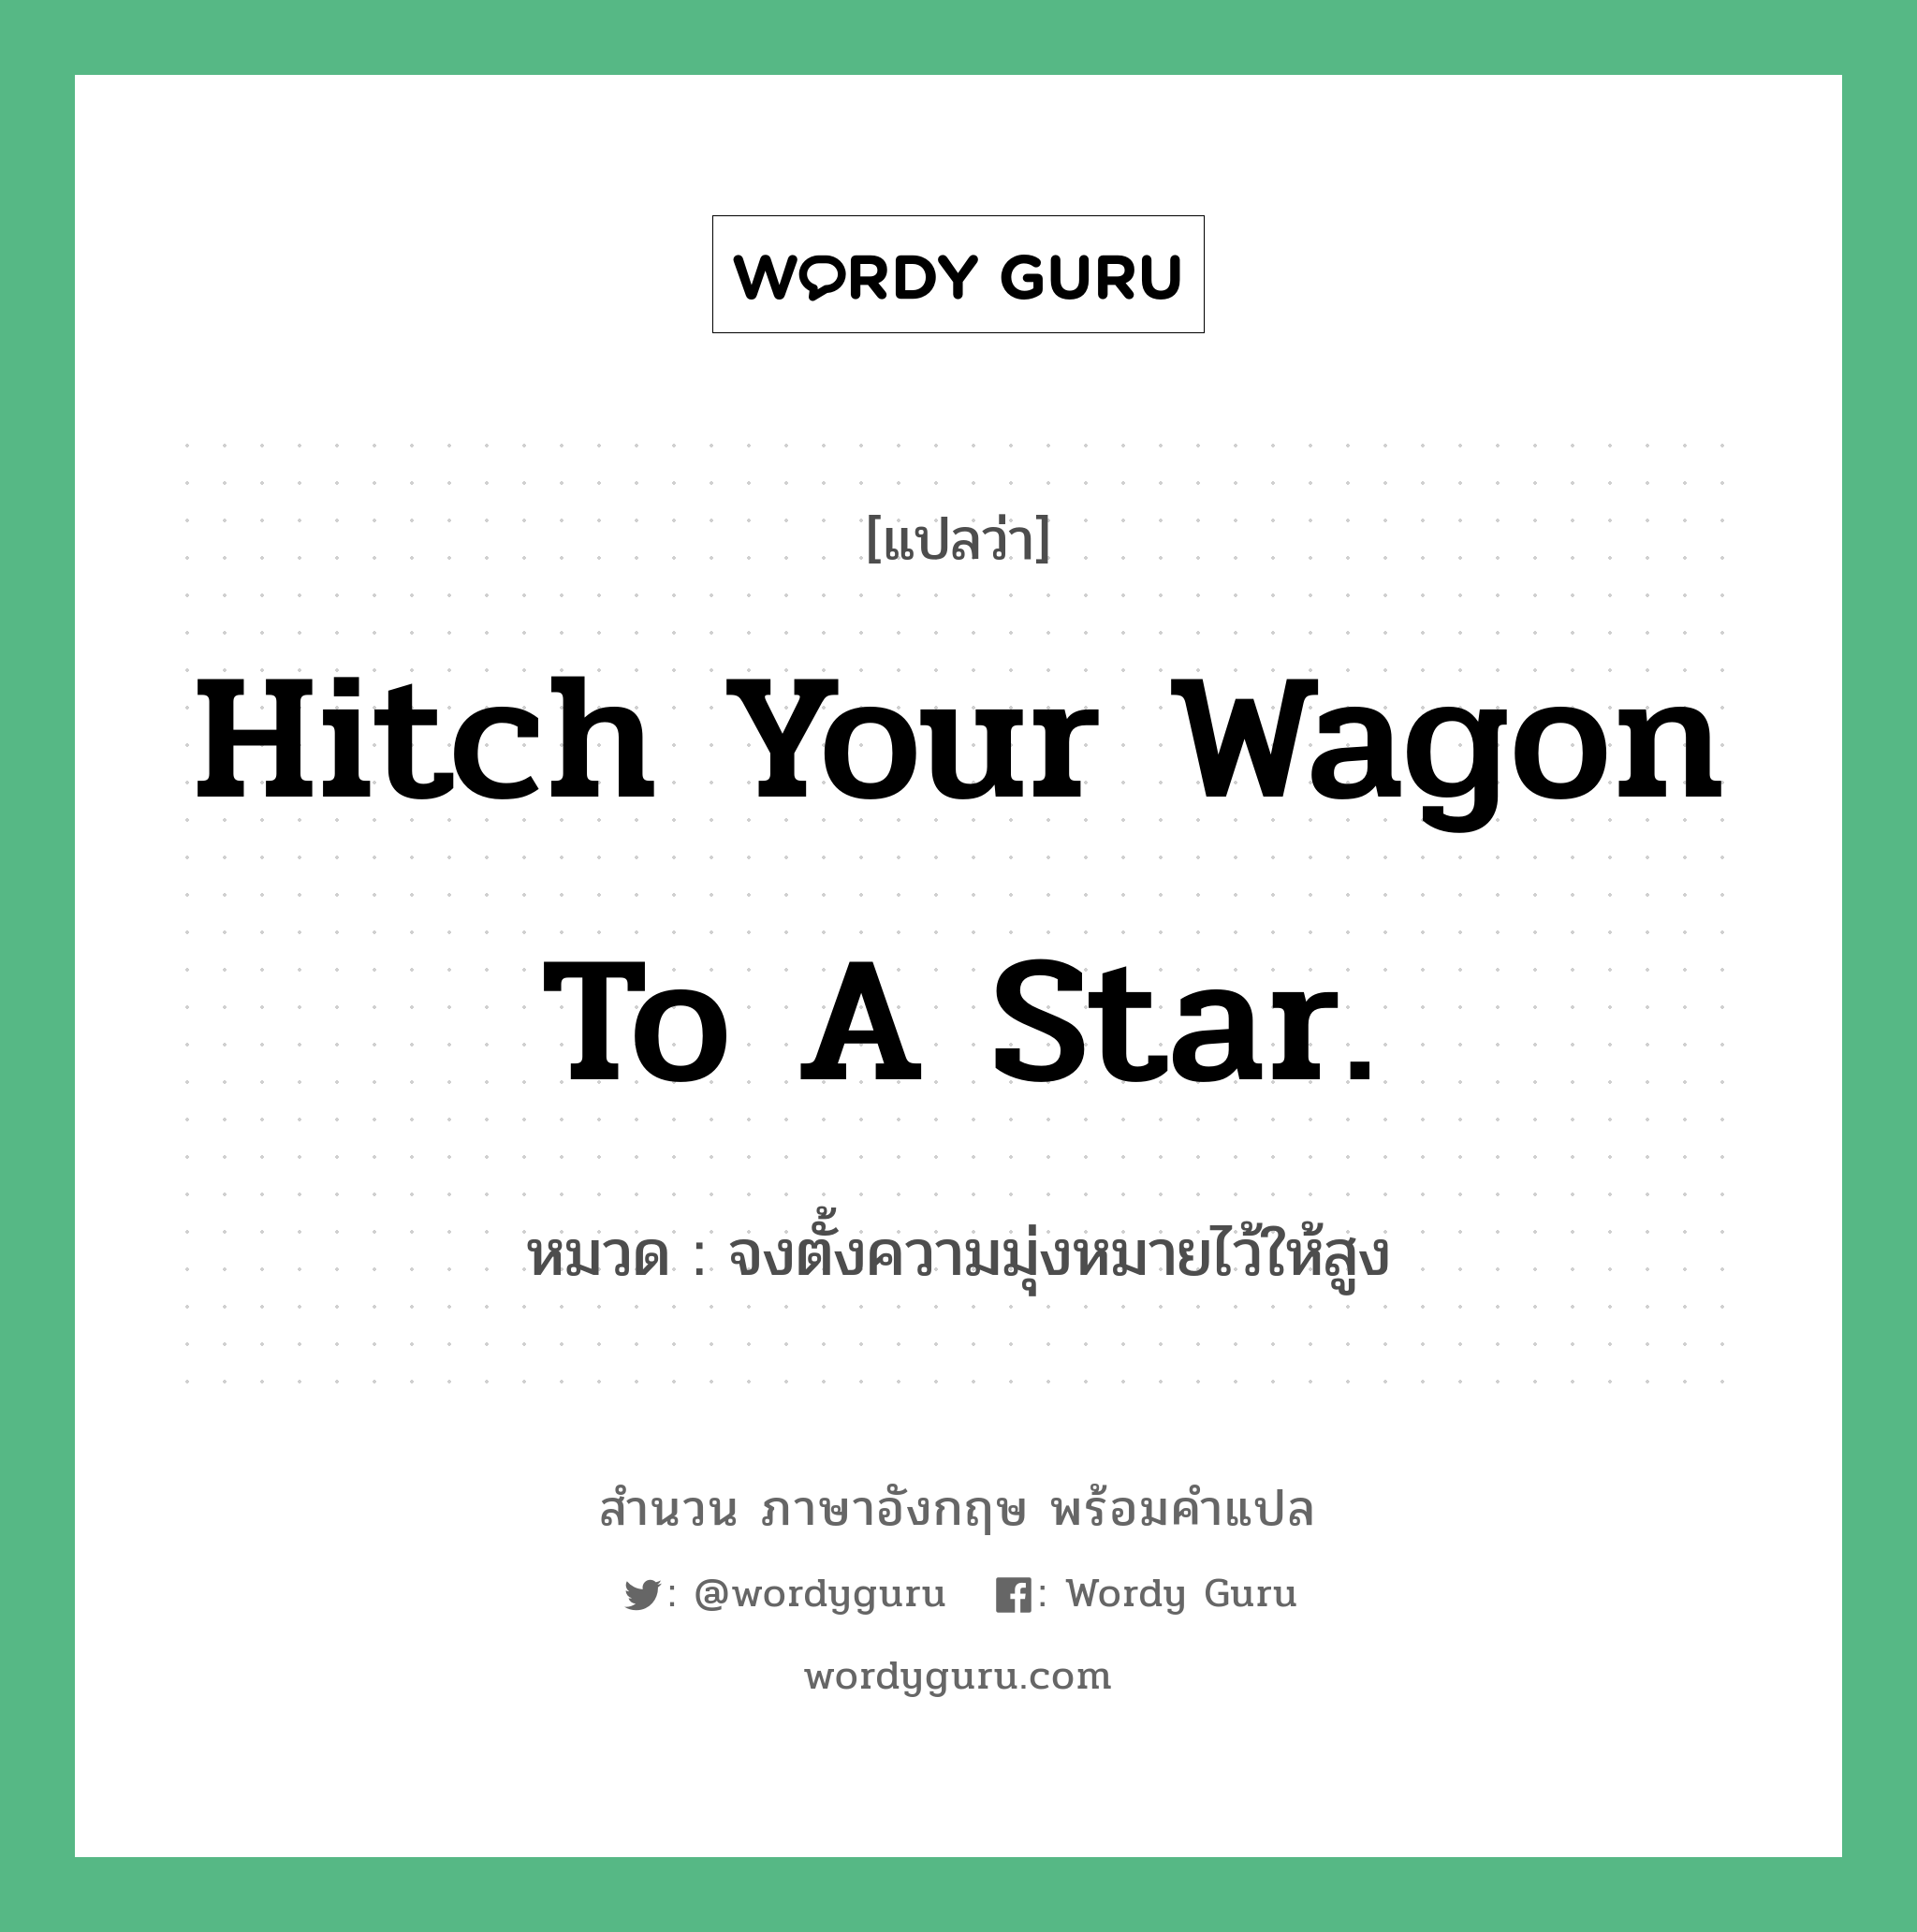 จงตั้งความมุ่งหมายไว้ให้สูง ภาษาอังกฤษ?, สำนวนภาษาอังกฤษ จงตั้งความมุ่งหมายไว้ให้สูง แปลว่า จงตั้งความมุ่งหมายไว้ให้สูง หมวด Hitch your wagon to a star. คำสุภาษิต ภาษาอังกฤษ หมวด คำสุภาษิต ภาษาอังกฤษ